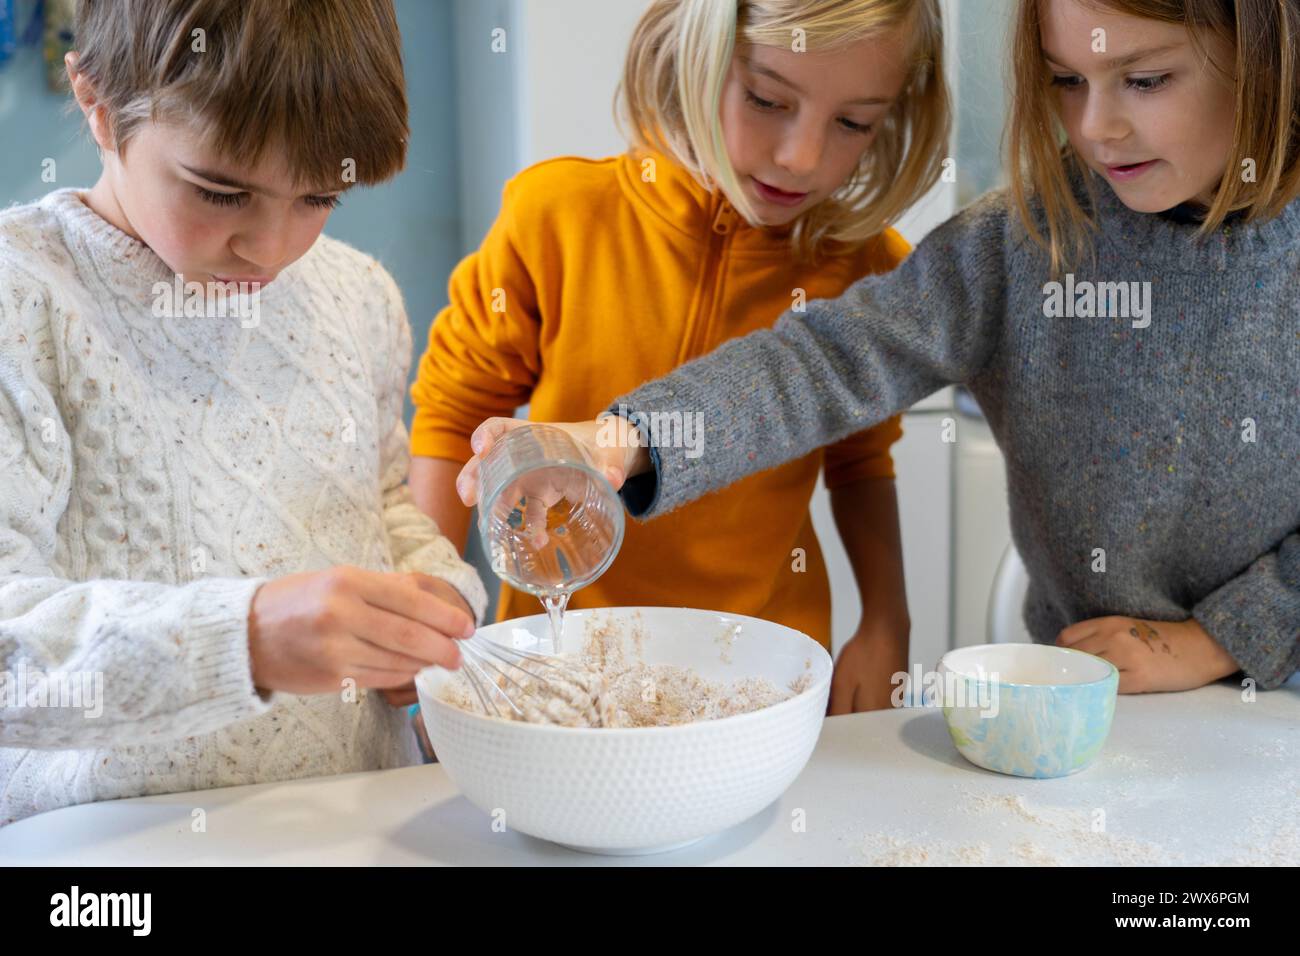 Drei Kinder bereiten gemeinsam einen selbstgemachten Pizzateig vor Stockfoto